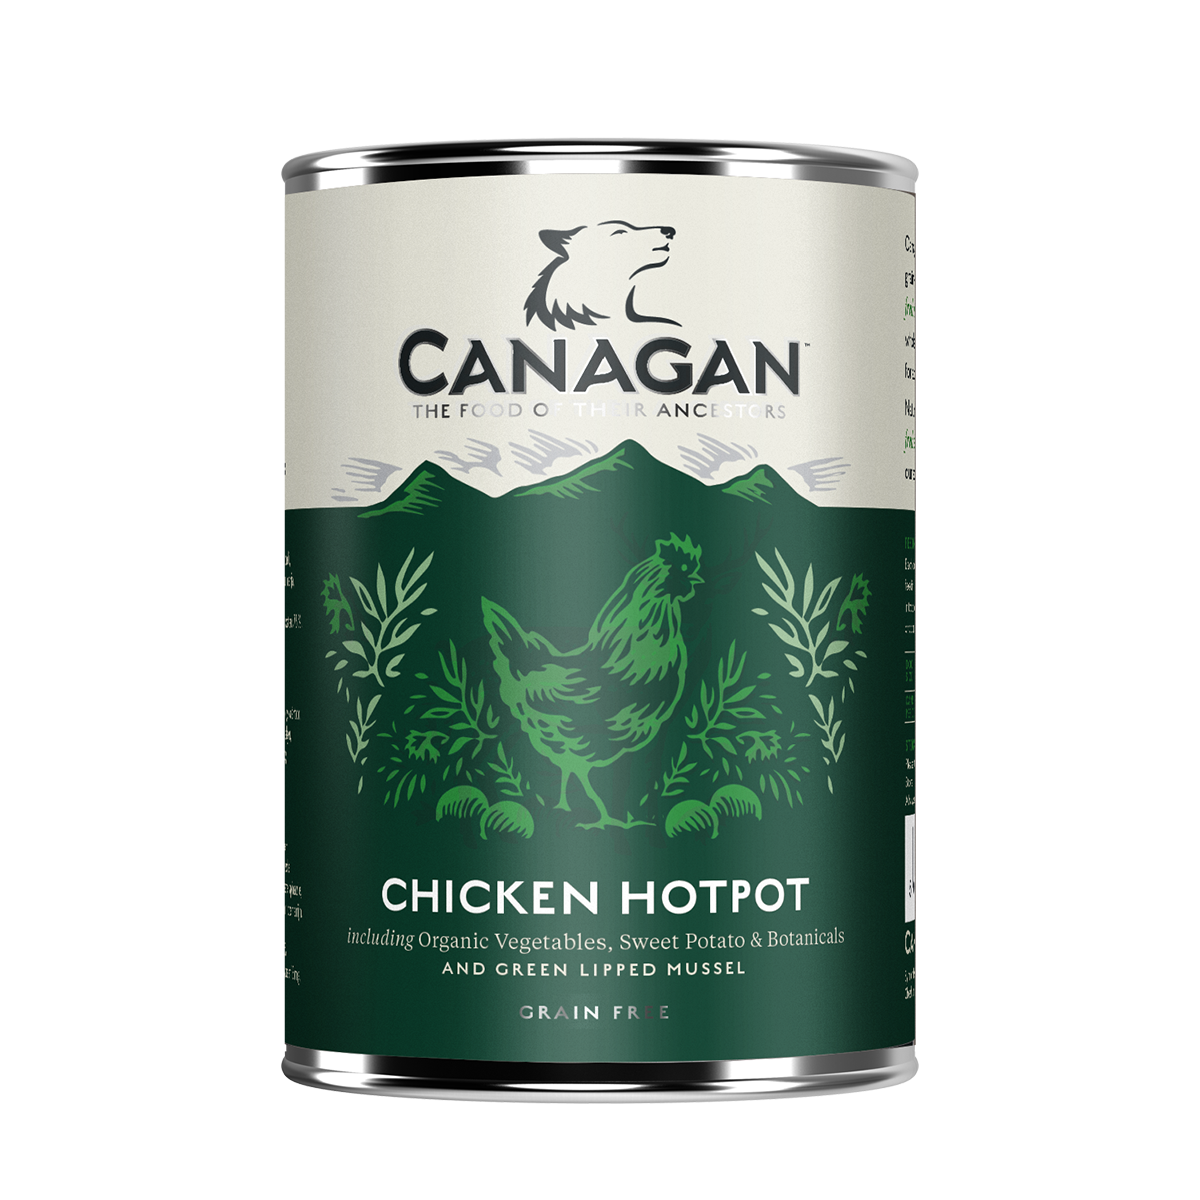 canagan chicken hotpot dog food canagan can kingston upon thames